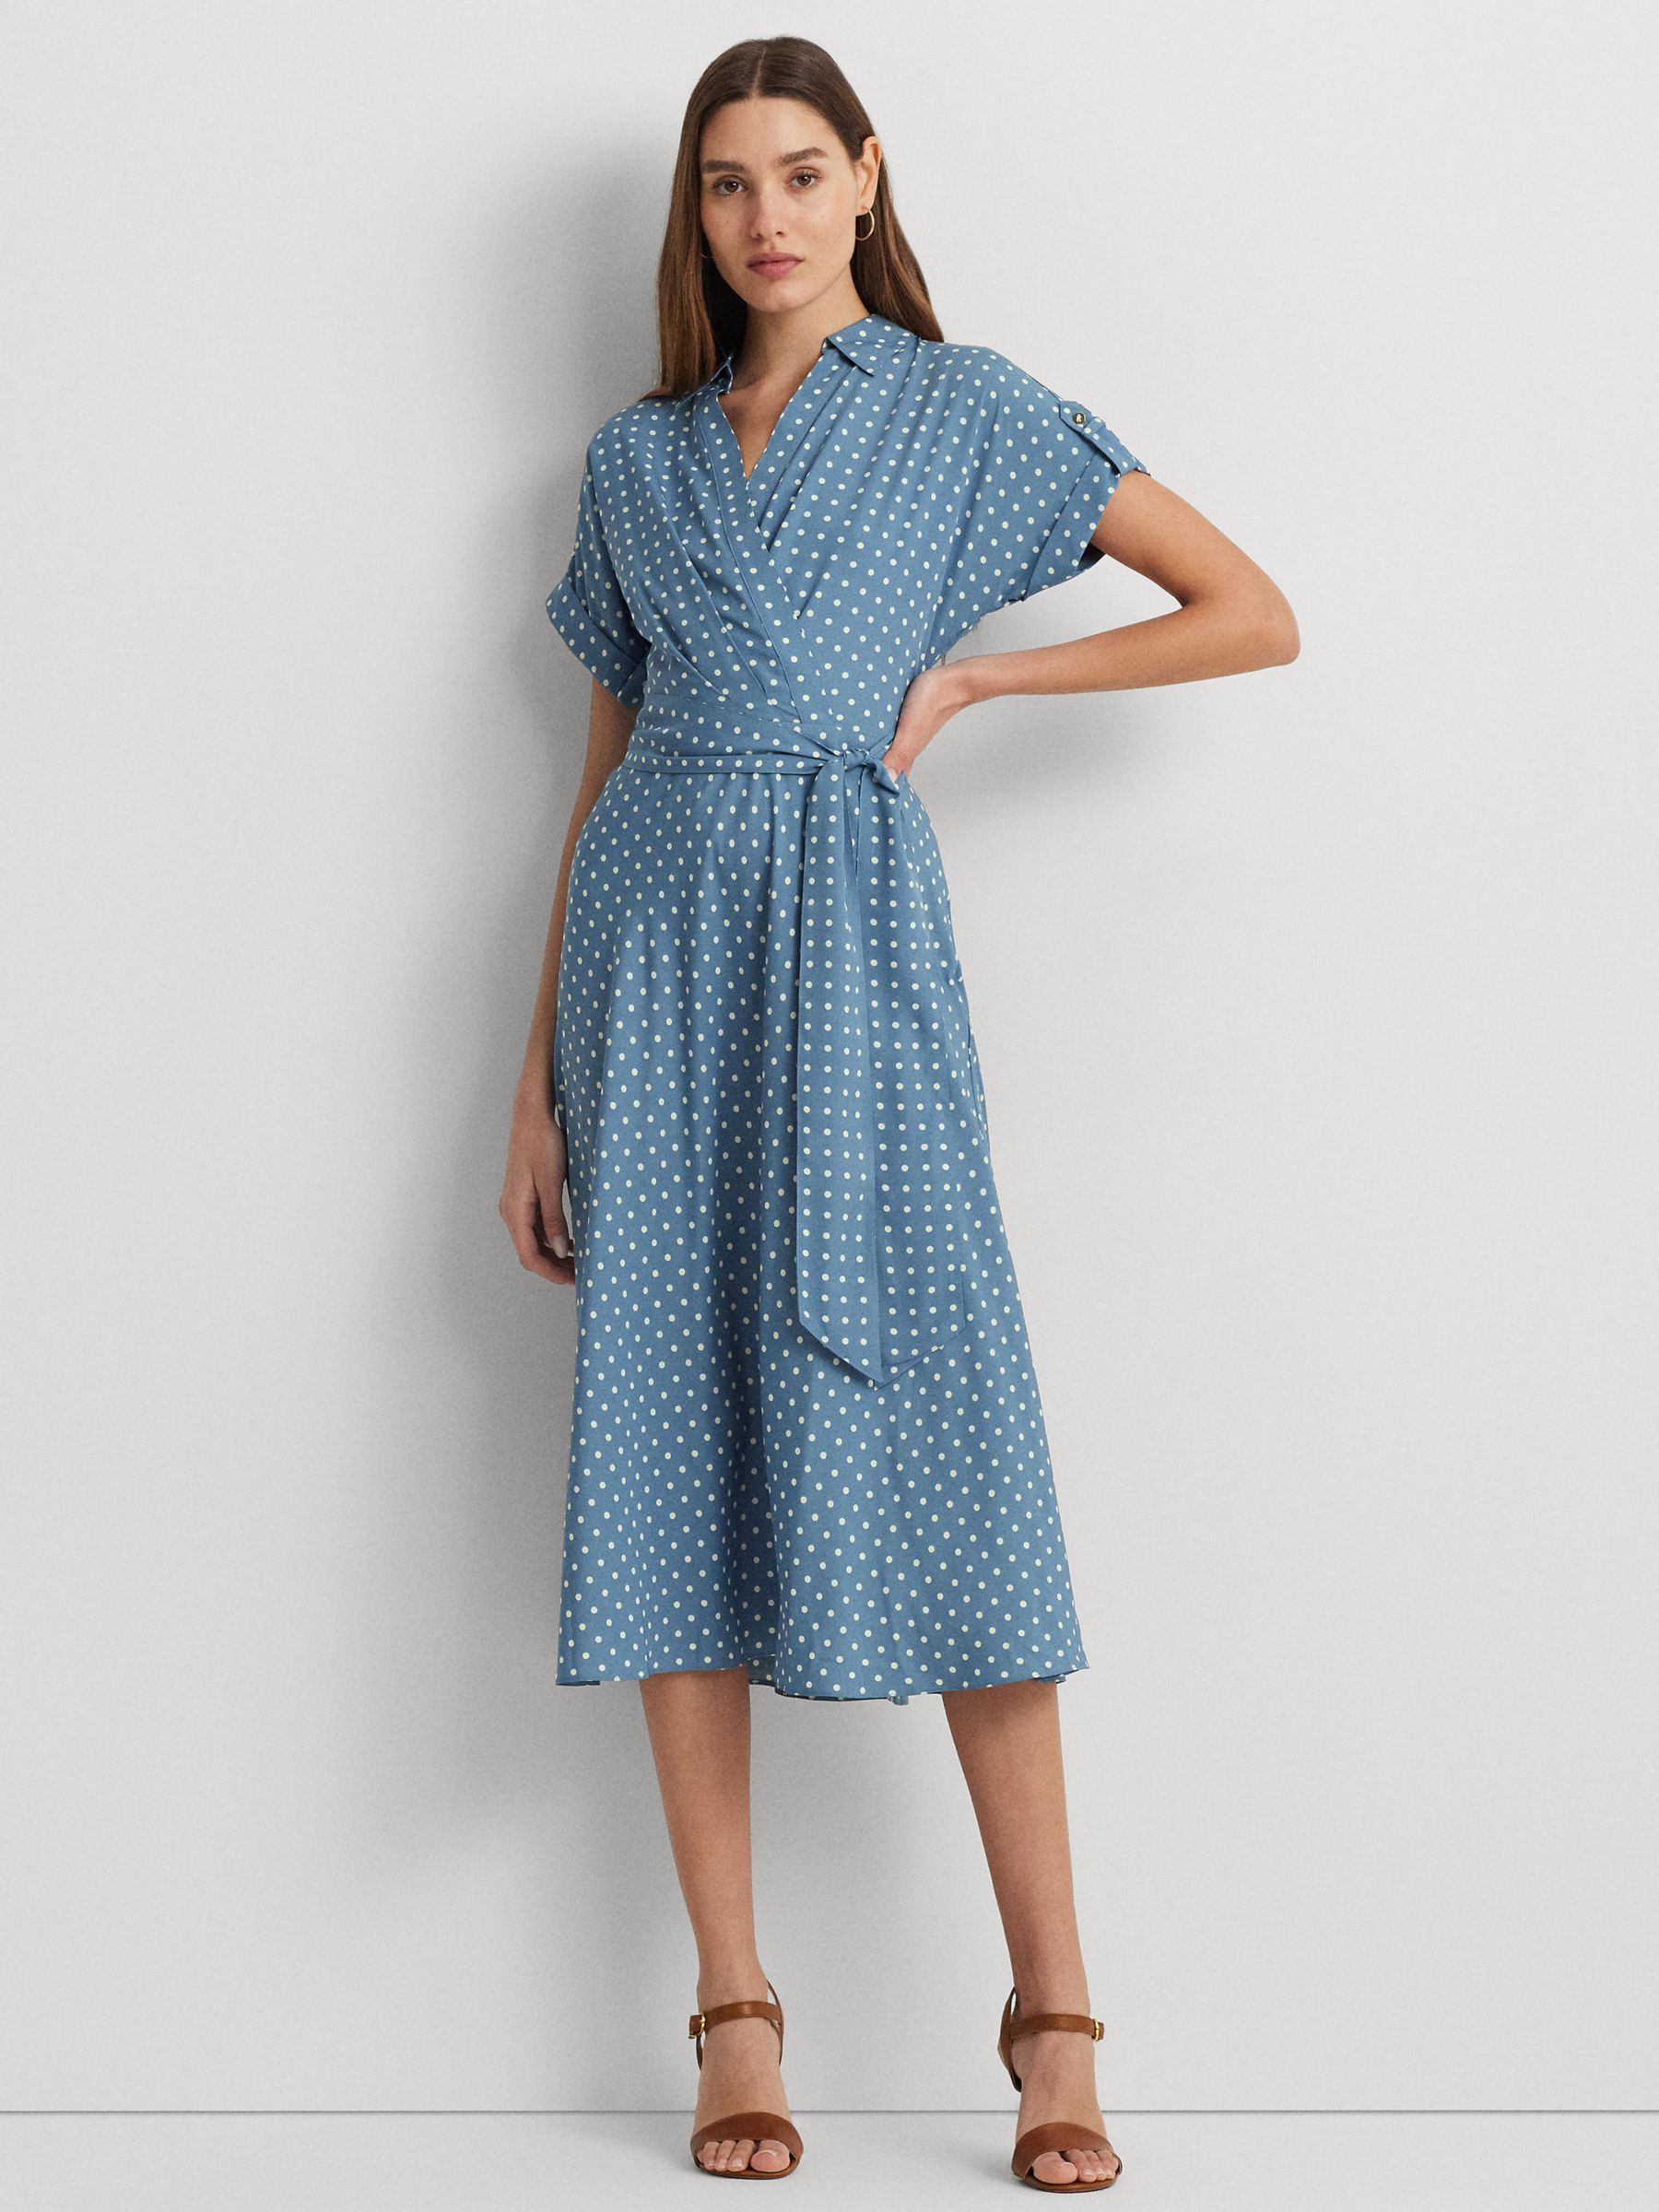 Lauren Ralph Lauren Fratillo Polka Dot Wrap Dress, Blue/Multi, 8